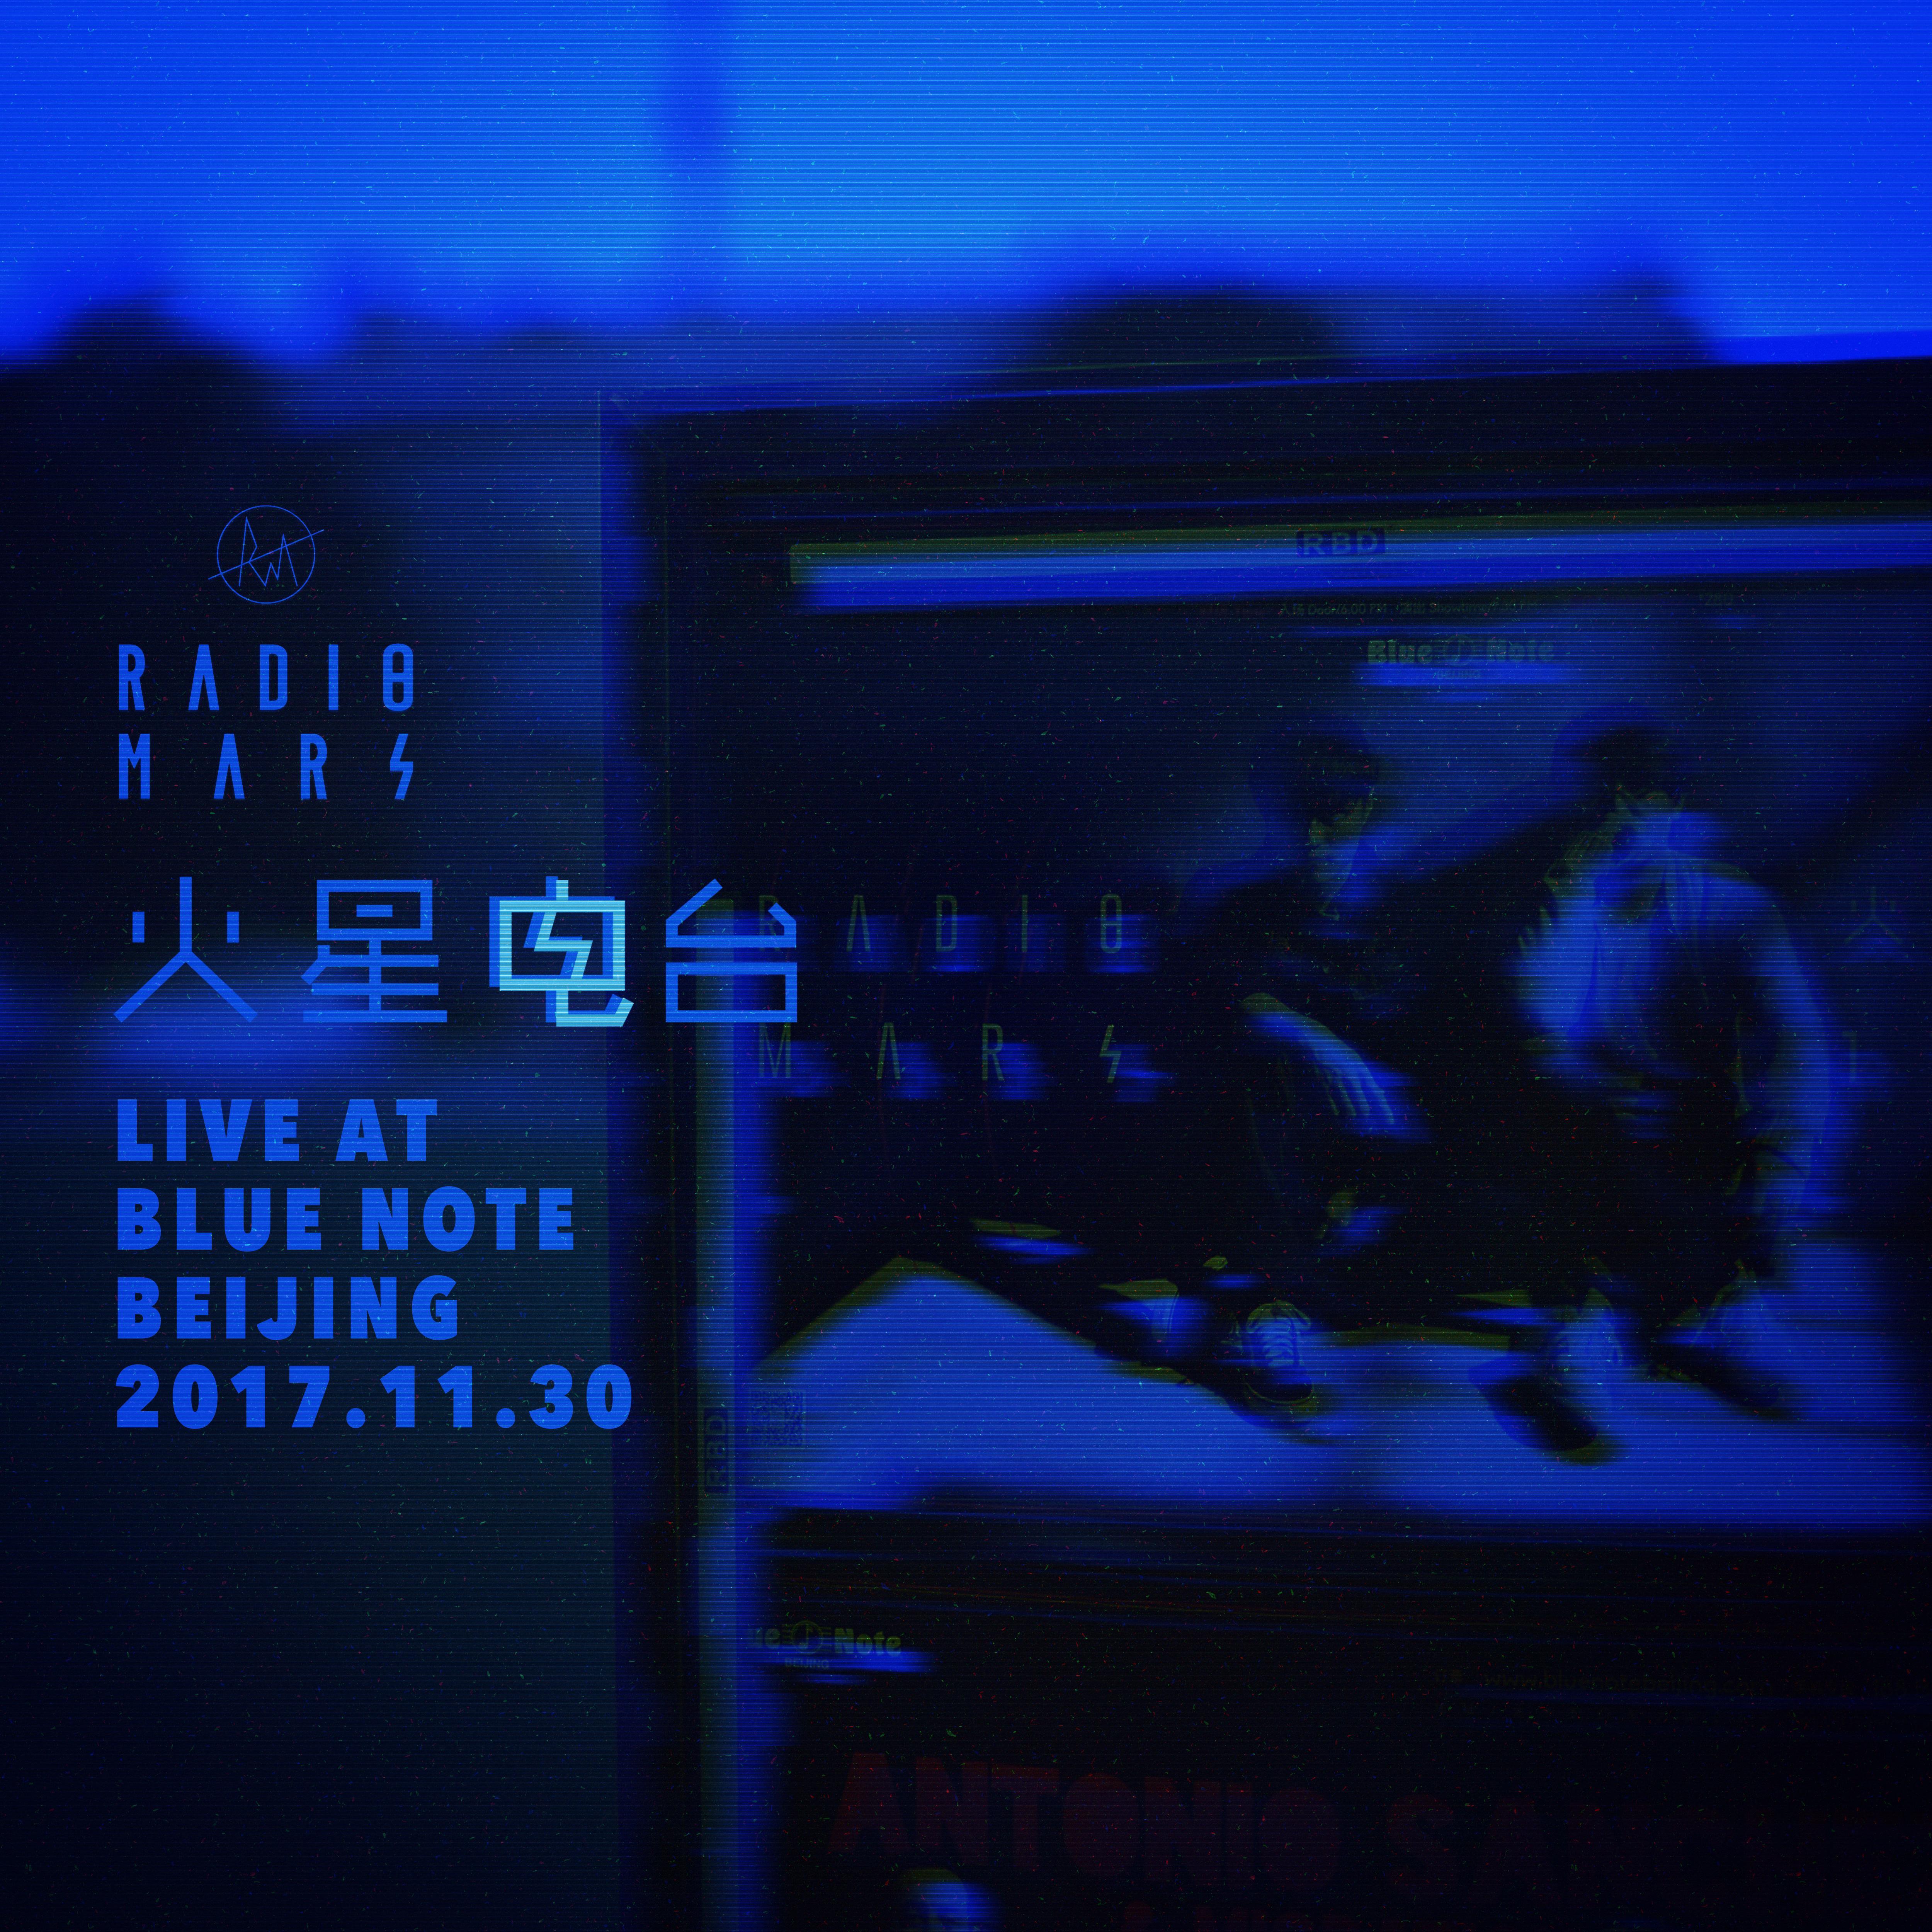 huo xing dian tai" Live at Blue Note Beijing" xian chang lu yin zhuan ji